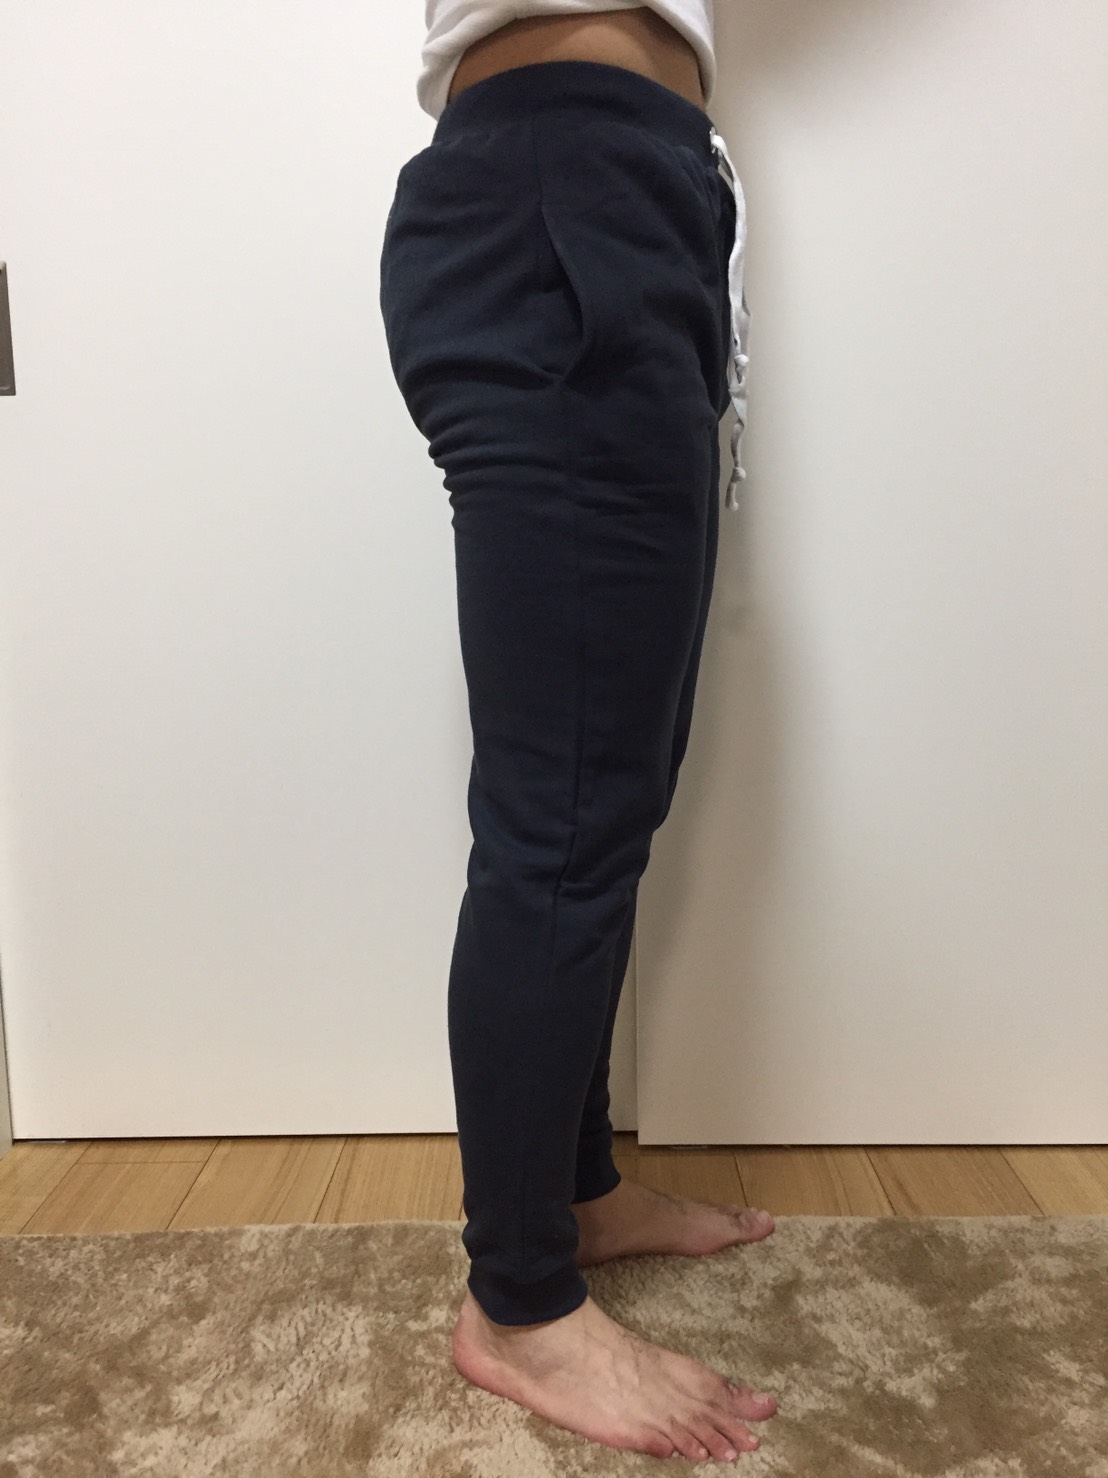 追記あり【写真】マイプロテインのアパレルのサイズ感について。Tシャツと各種パンツを実際に履いてみて。 | リザルト・ブログ